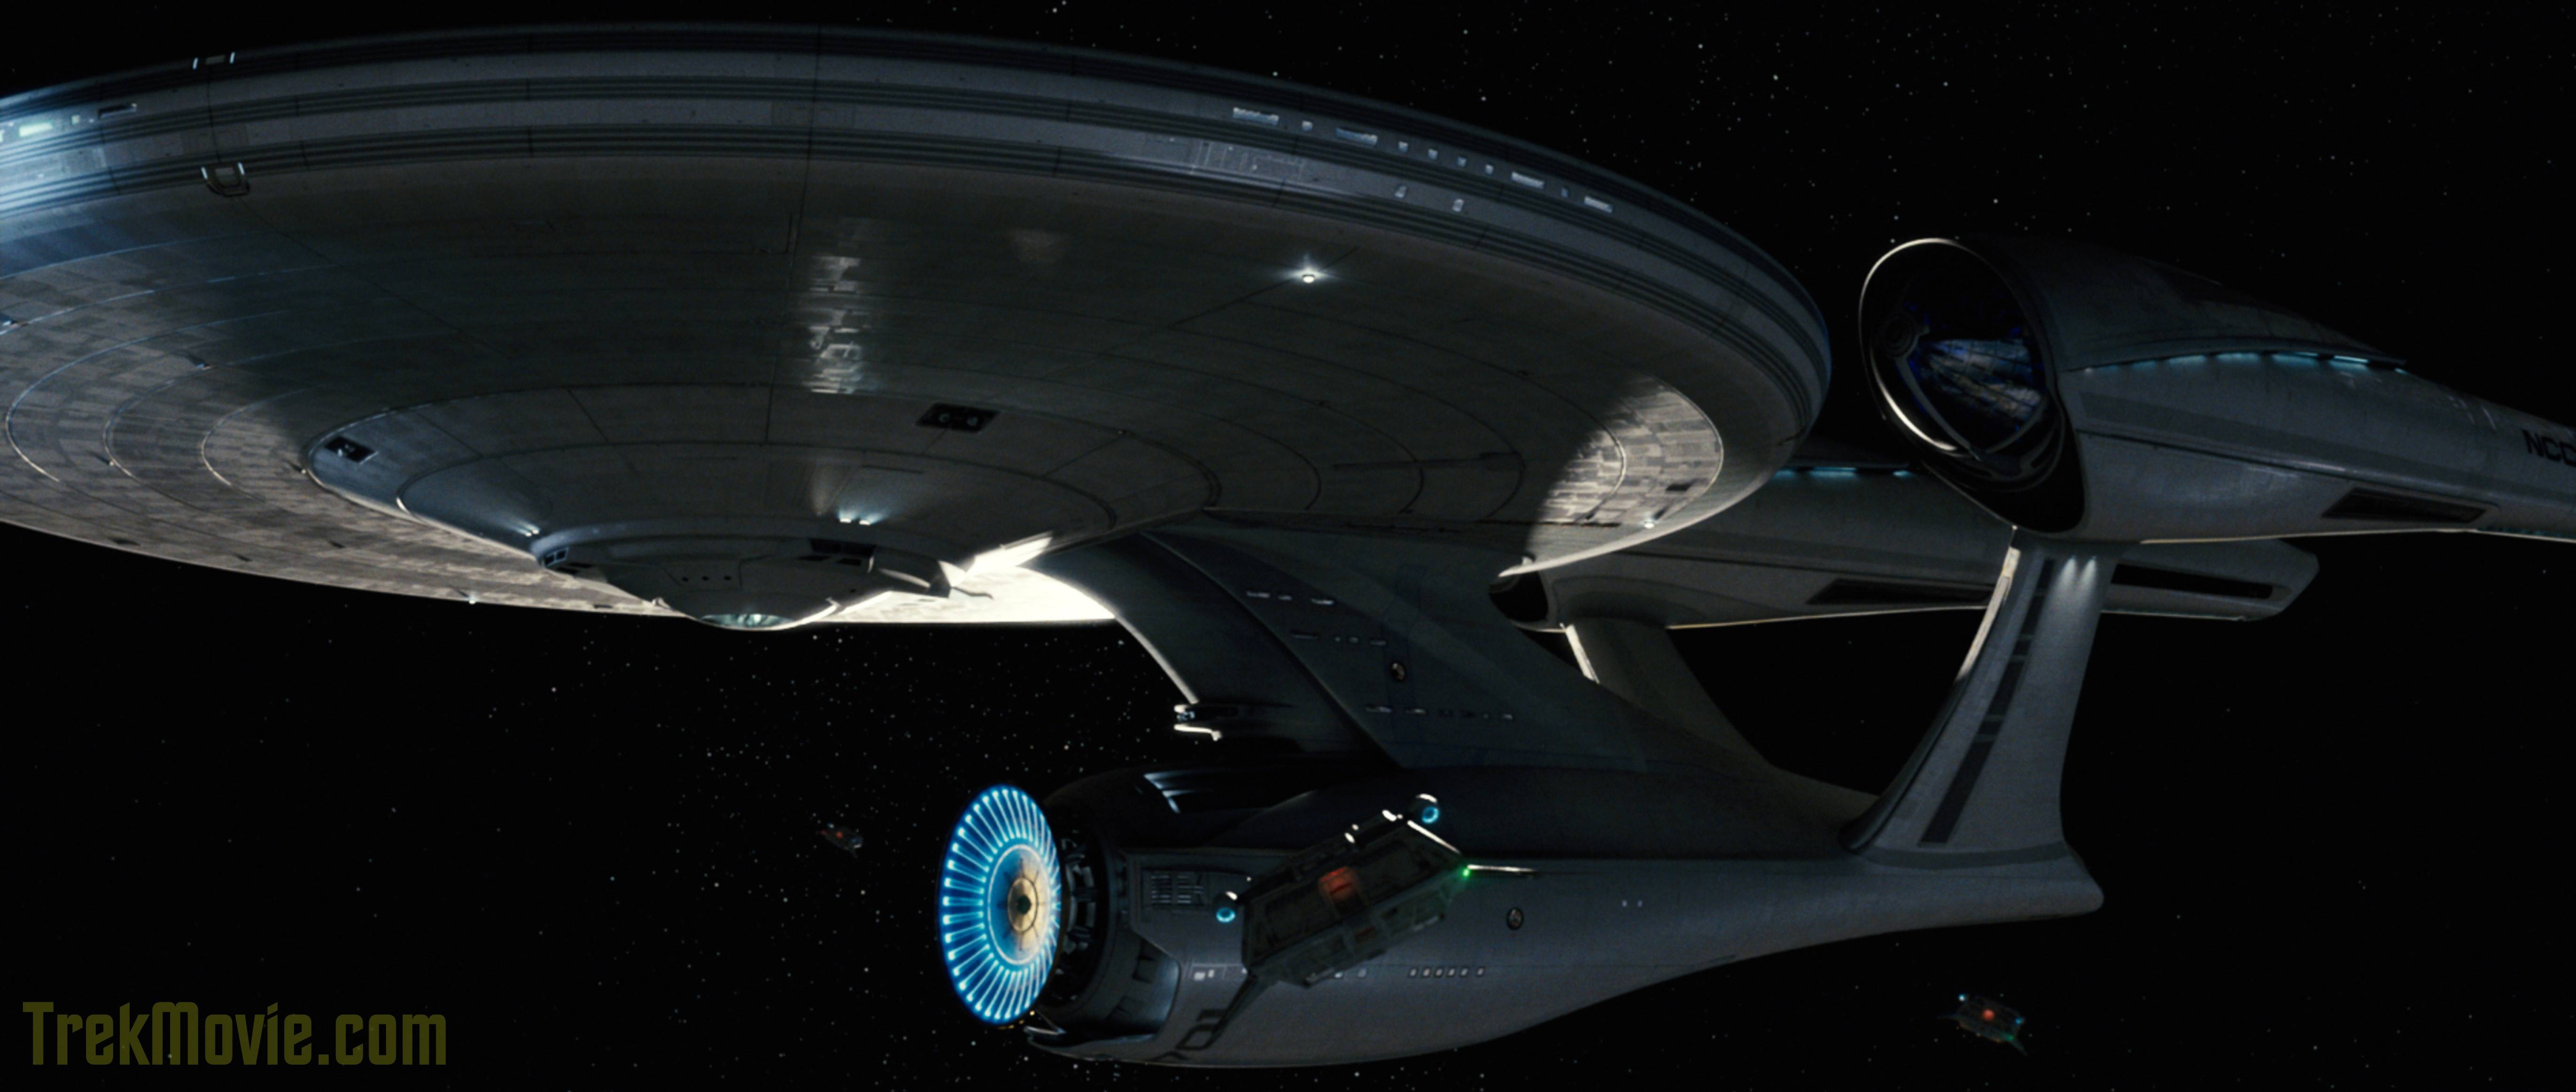 Super High Resolution Image For &;Star Trek&; 2009. TrekMovie